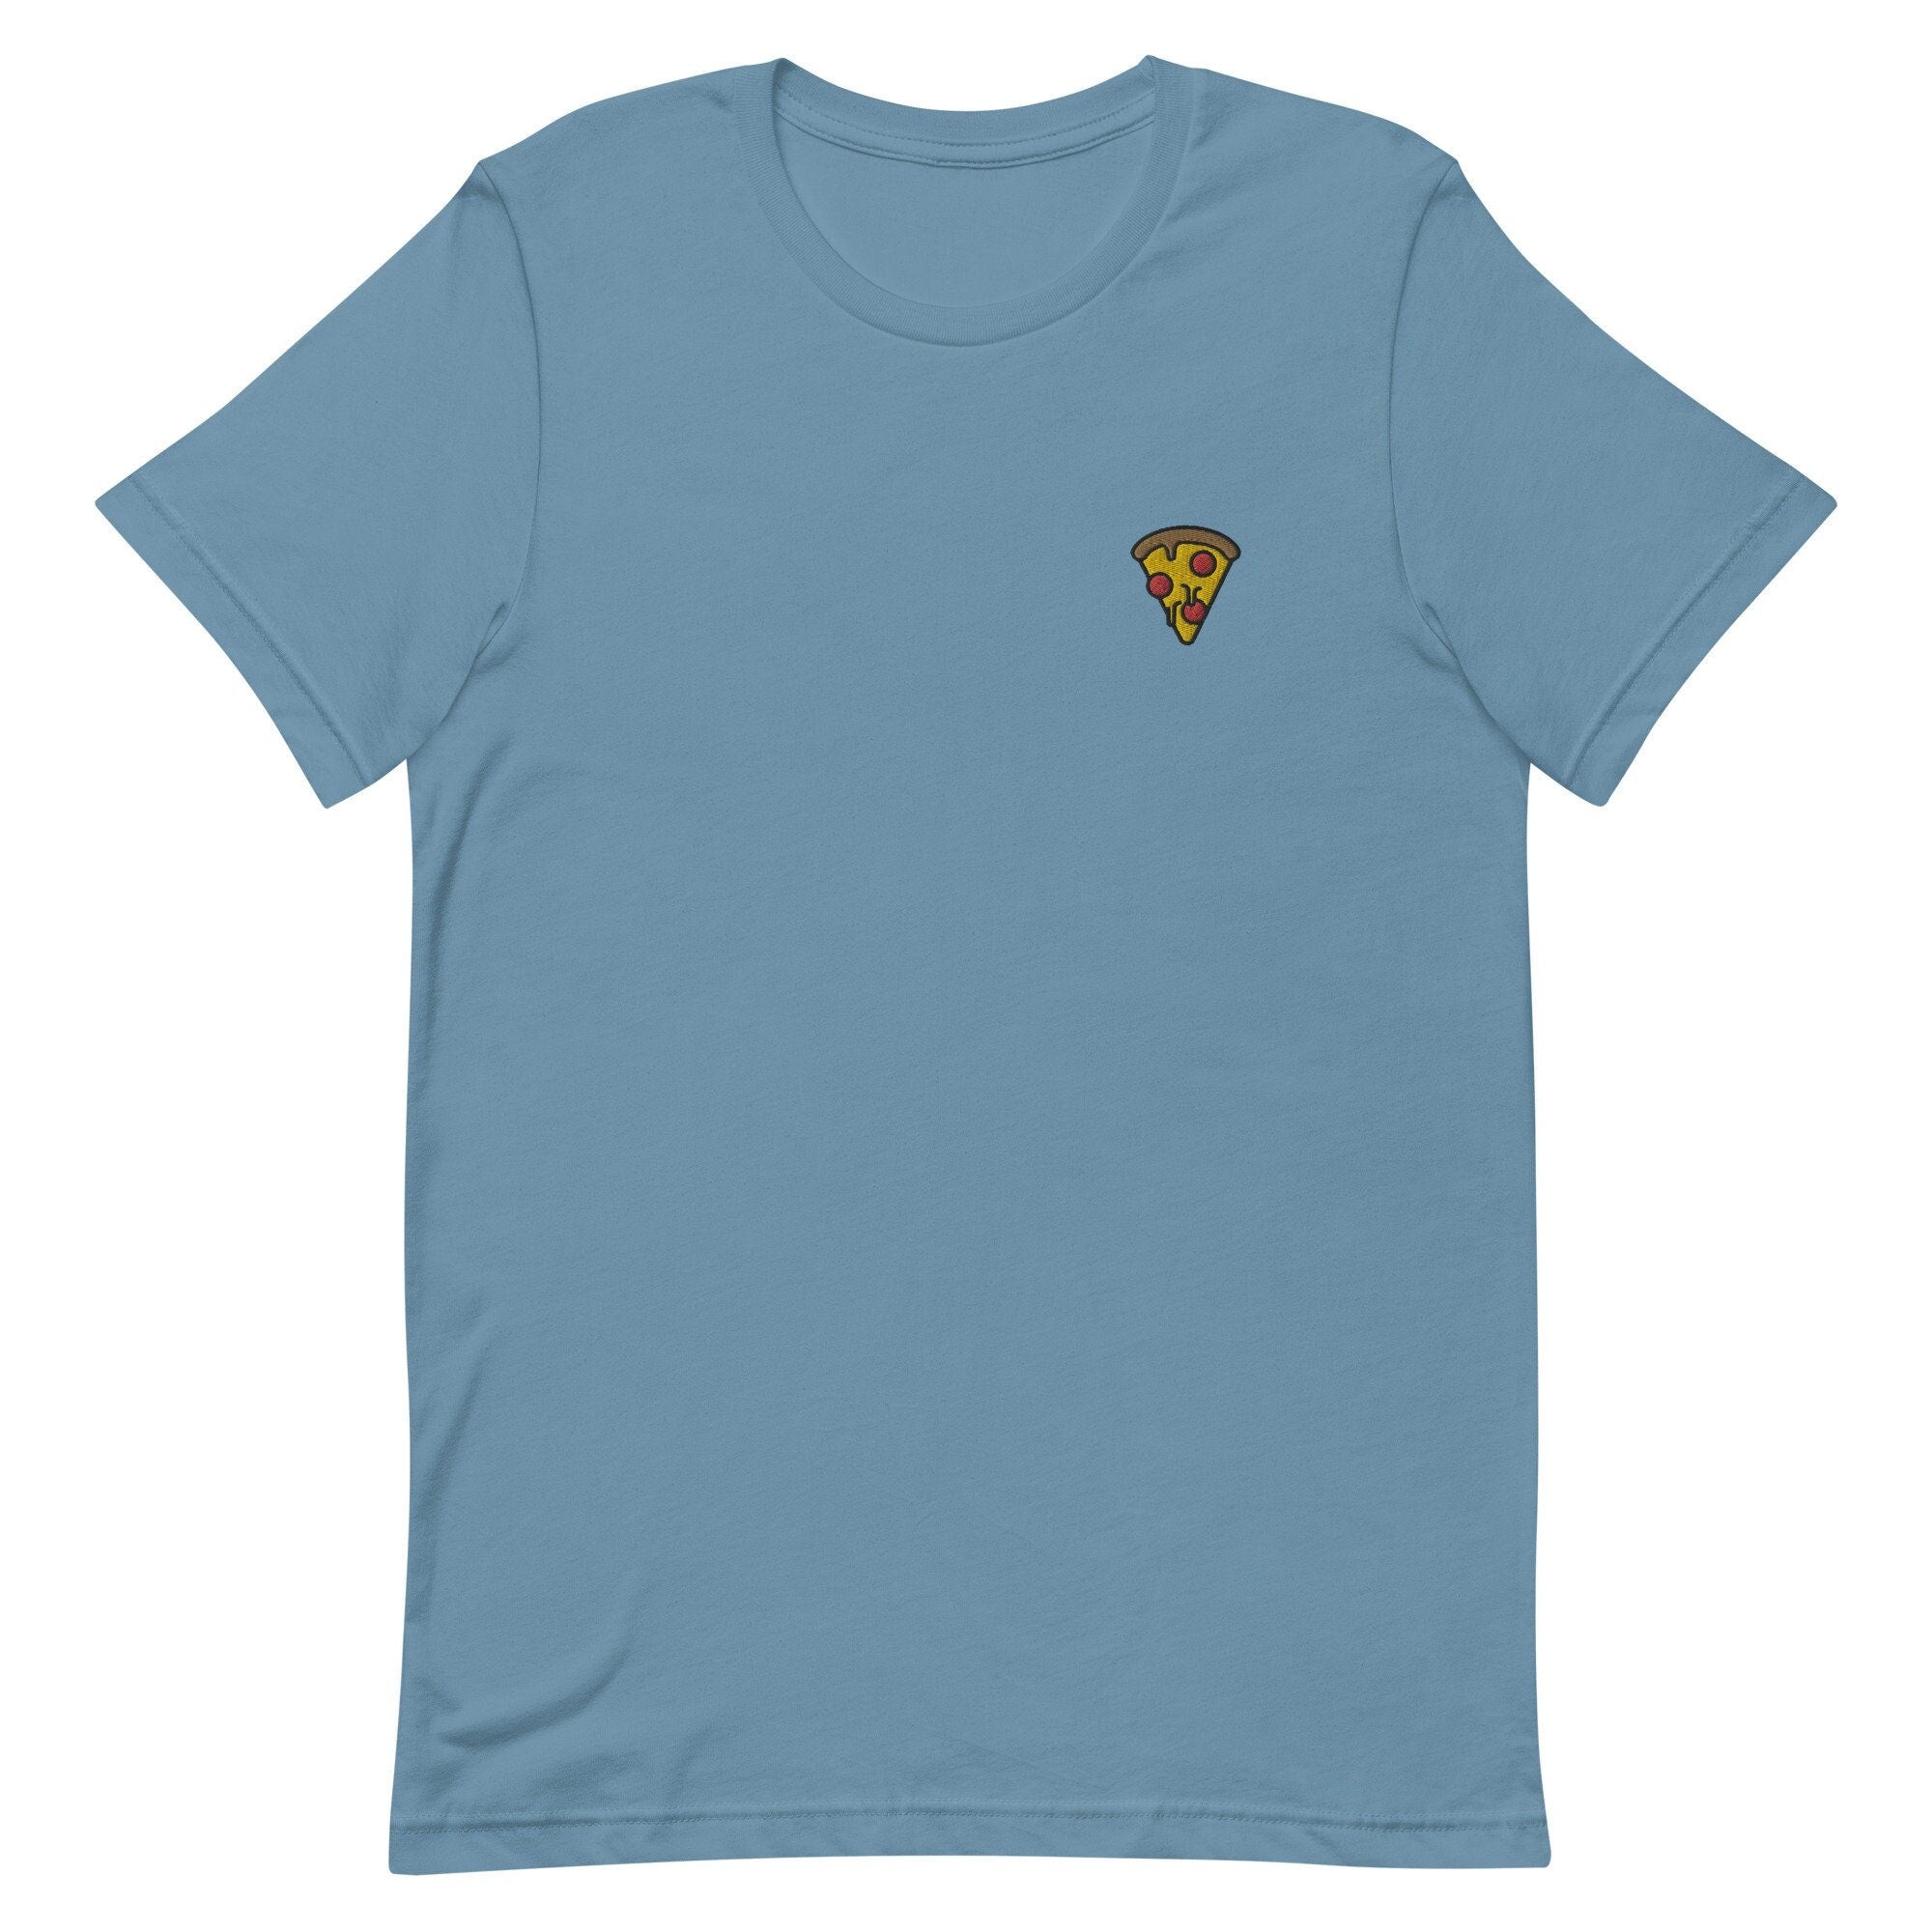 Pizza Premium Men's T-Shirt, Embroidered Men's T-Shirt Gift for Boyfriend, Men's Short Sleeve Shirt - Multiple Colors